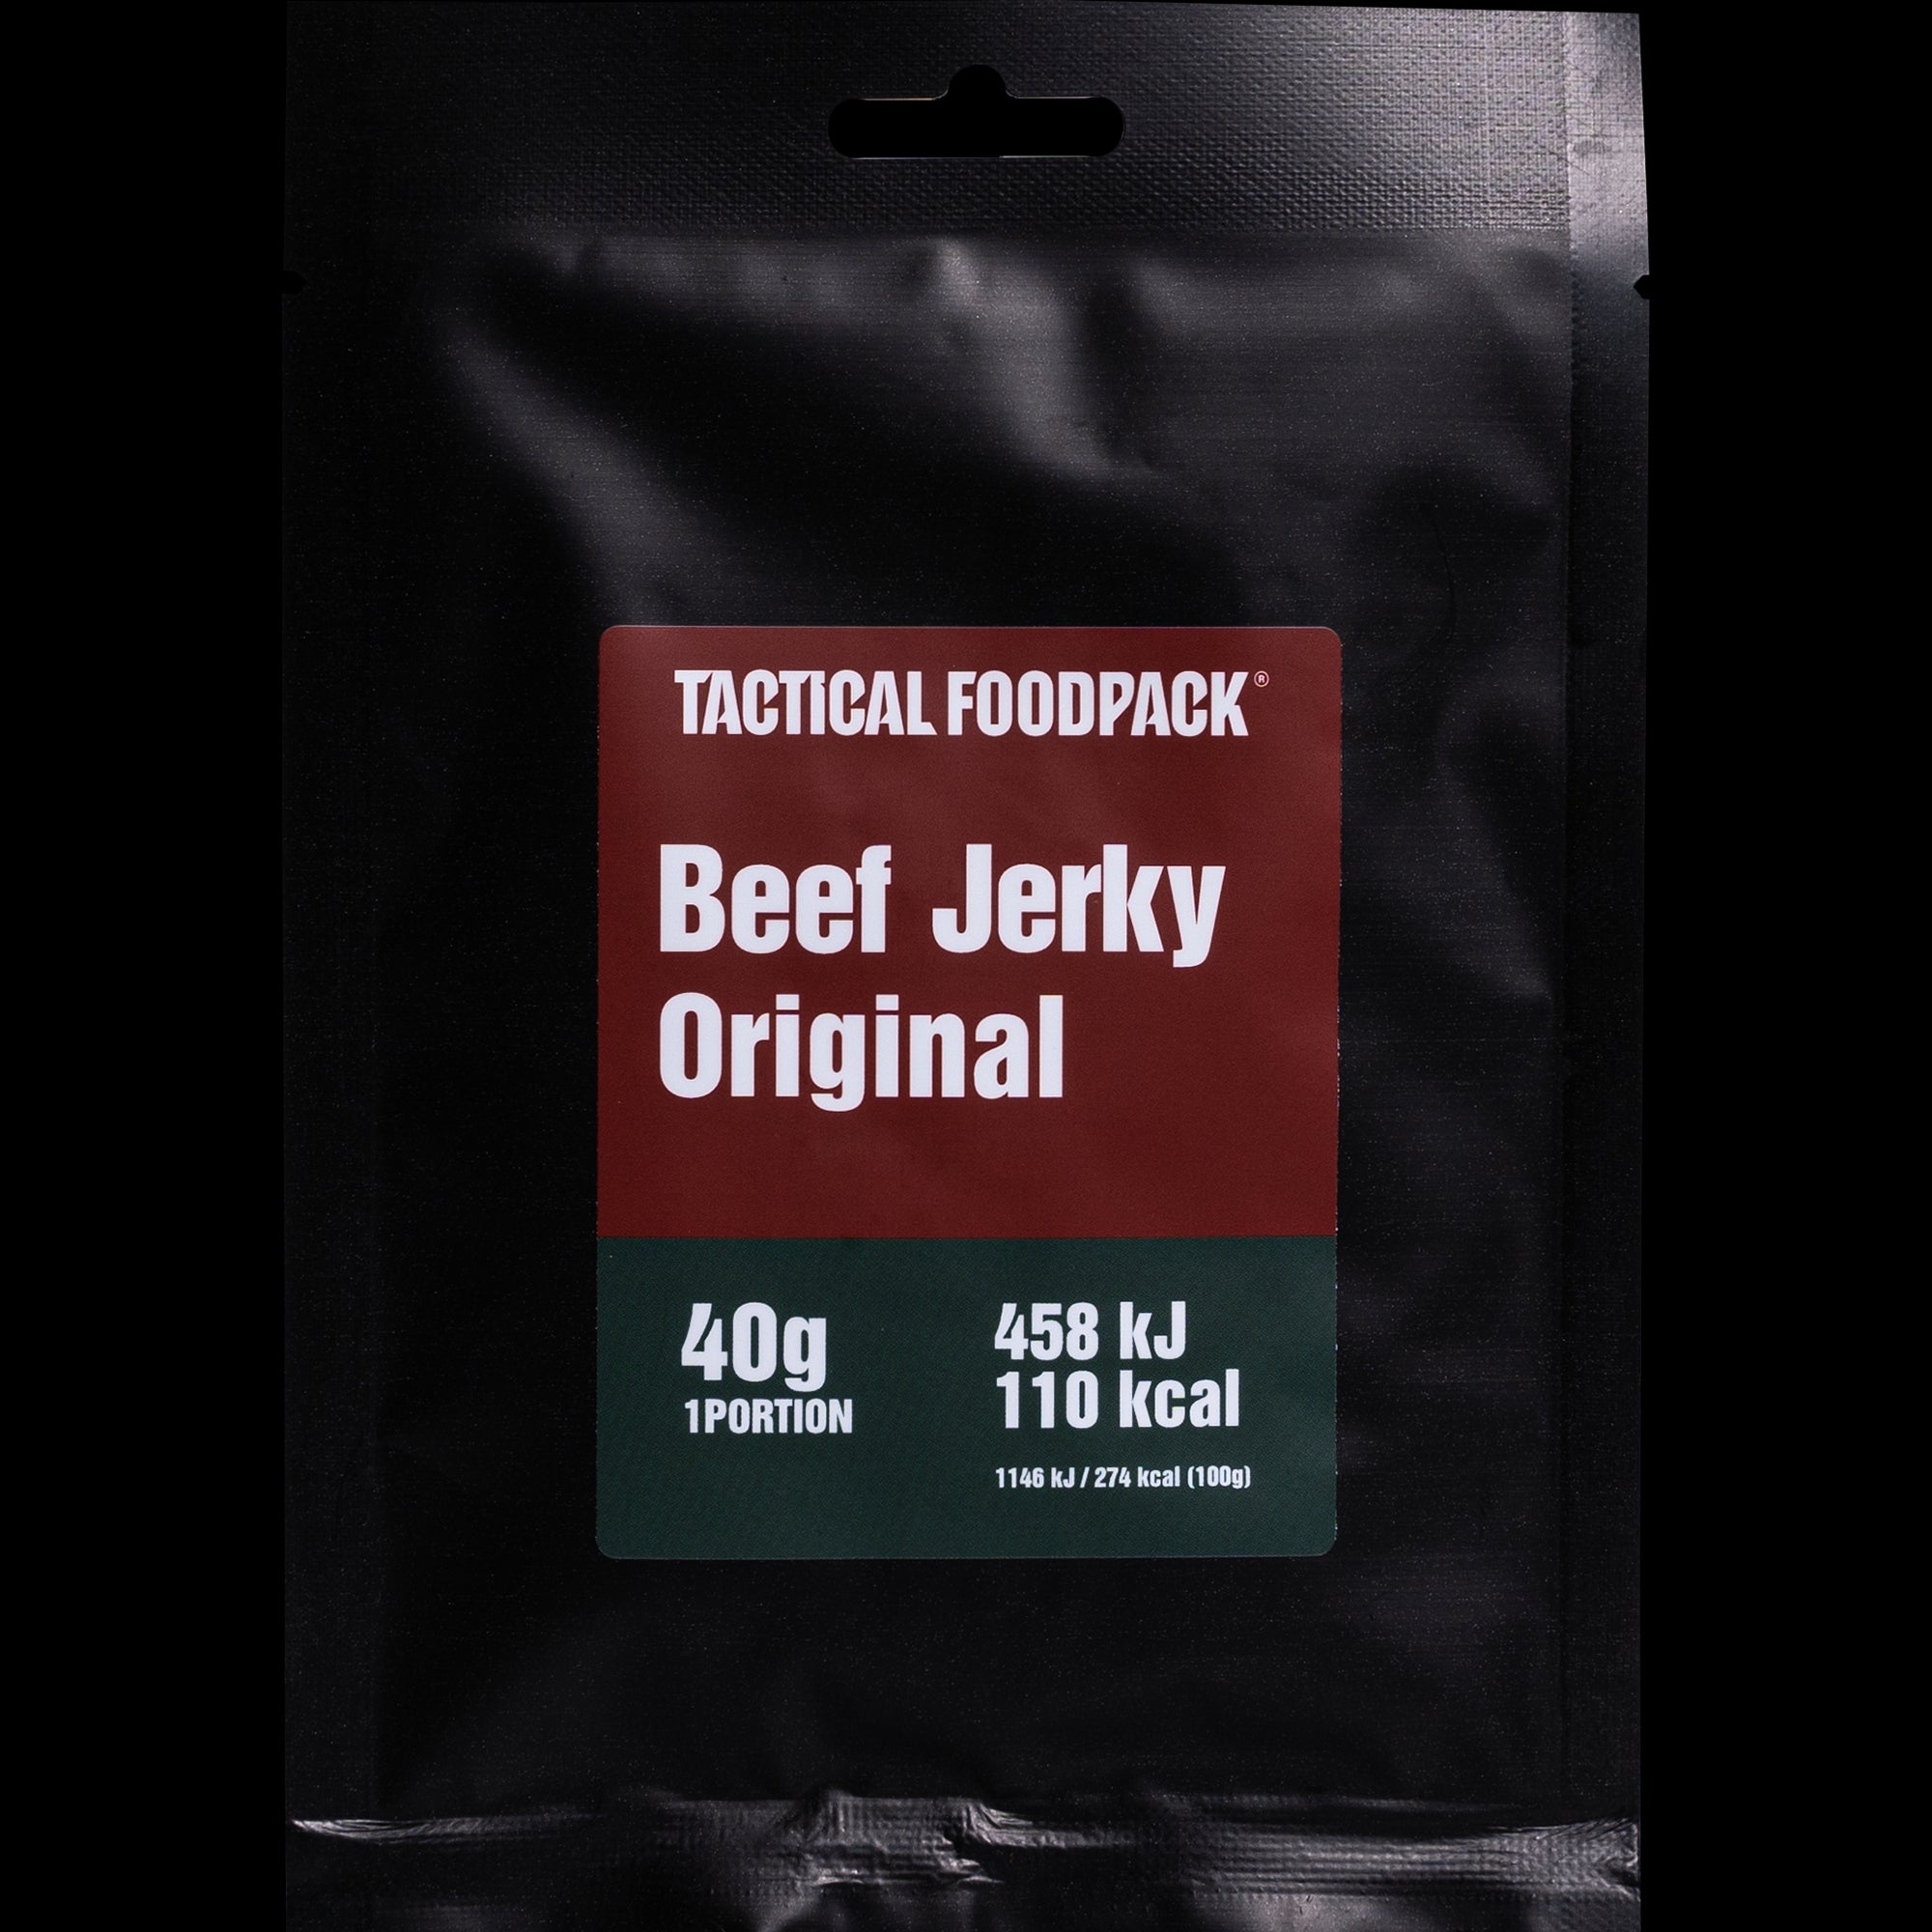 Tactical Foodpack - Beef Jerky Original 40g